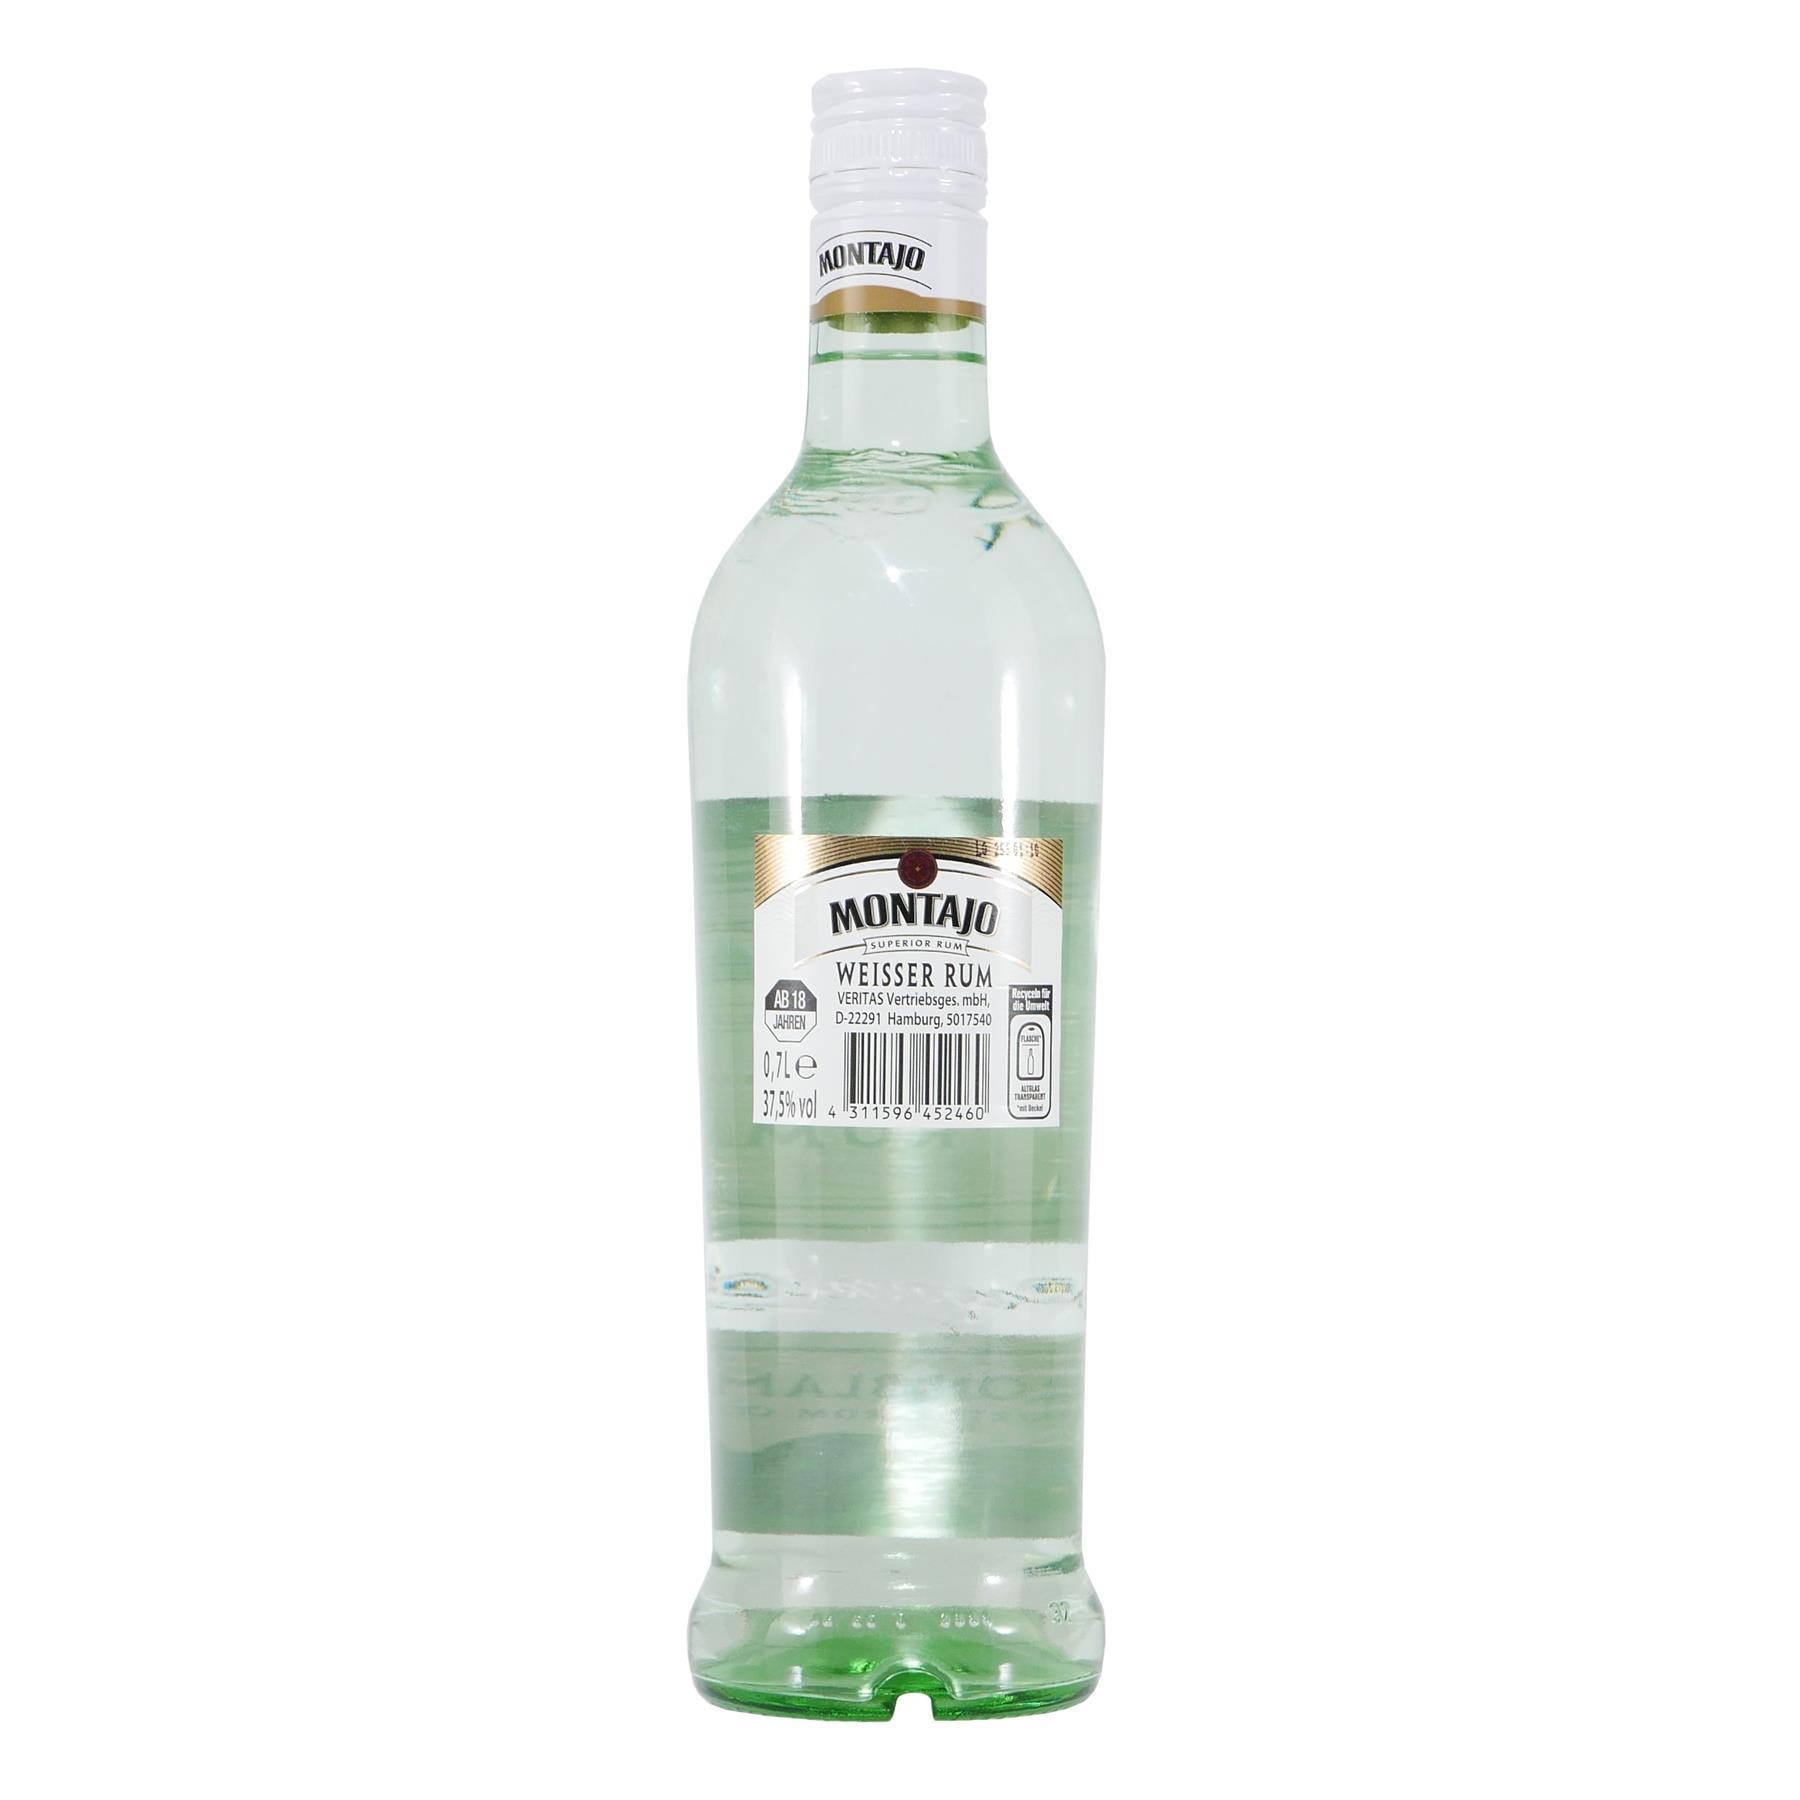 MONTAJO White Rum (6 x 0,7L)